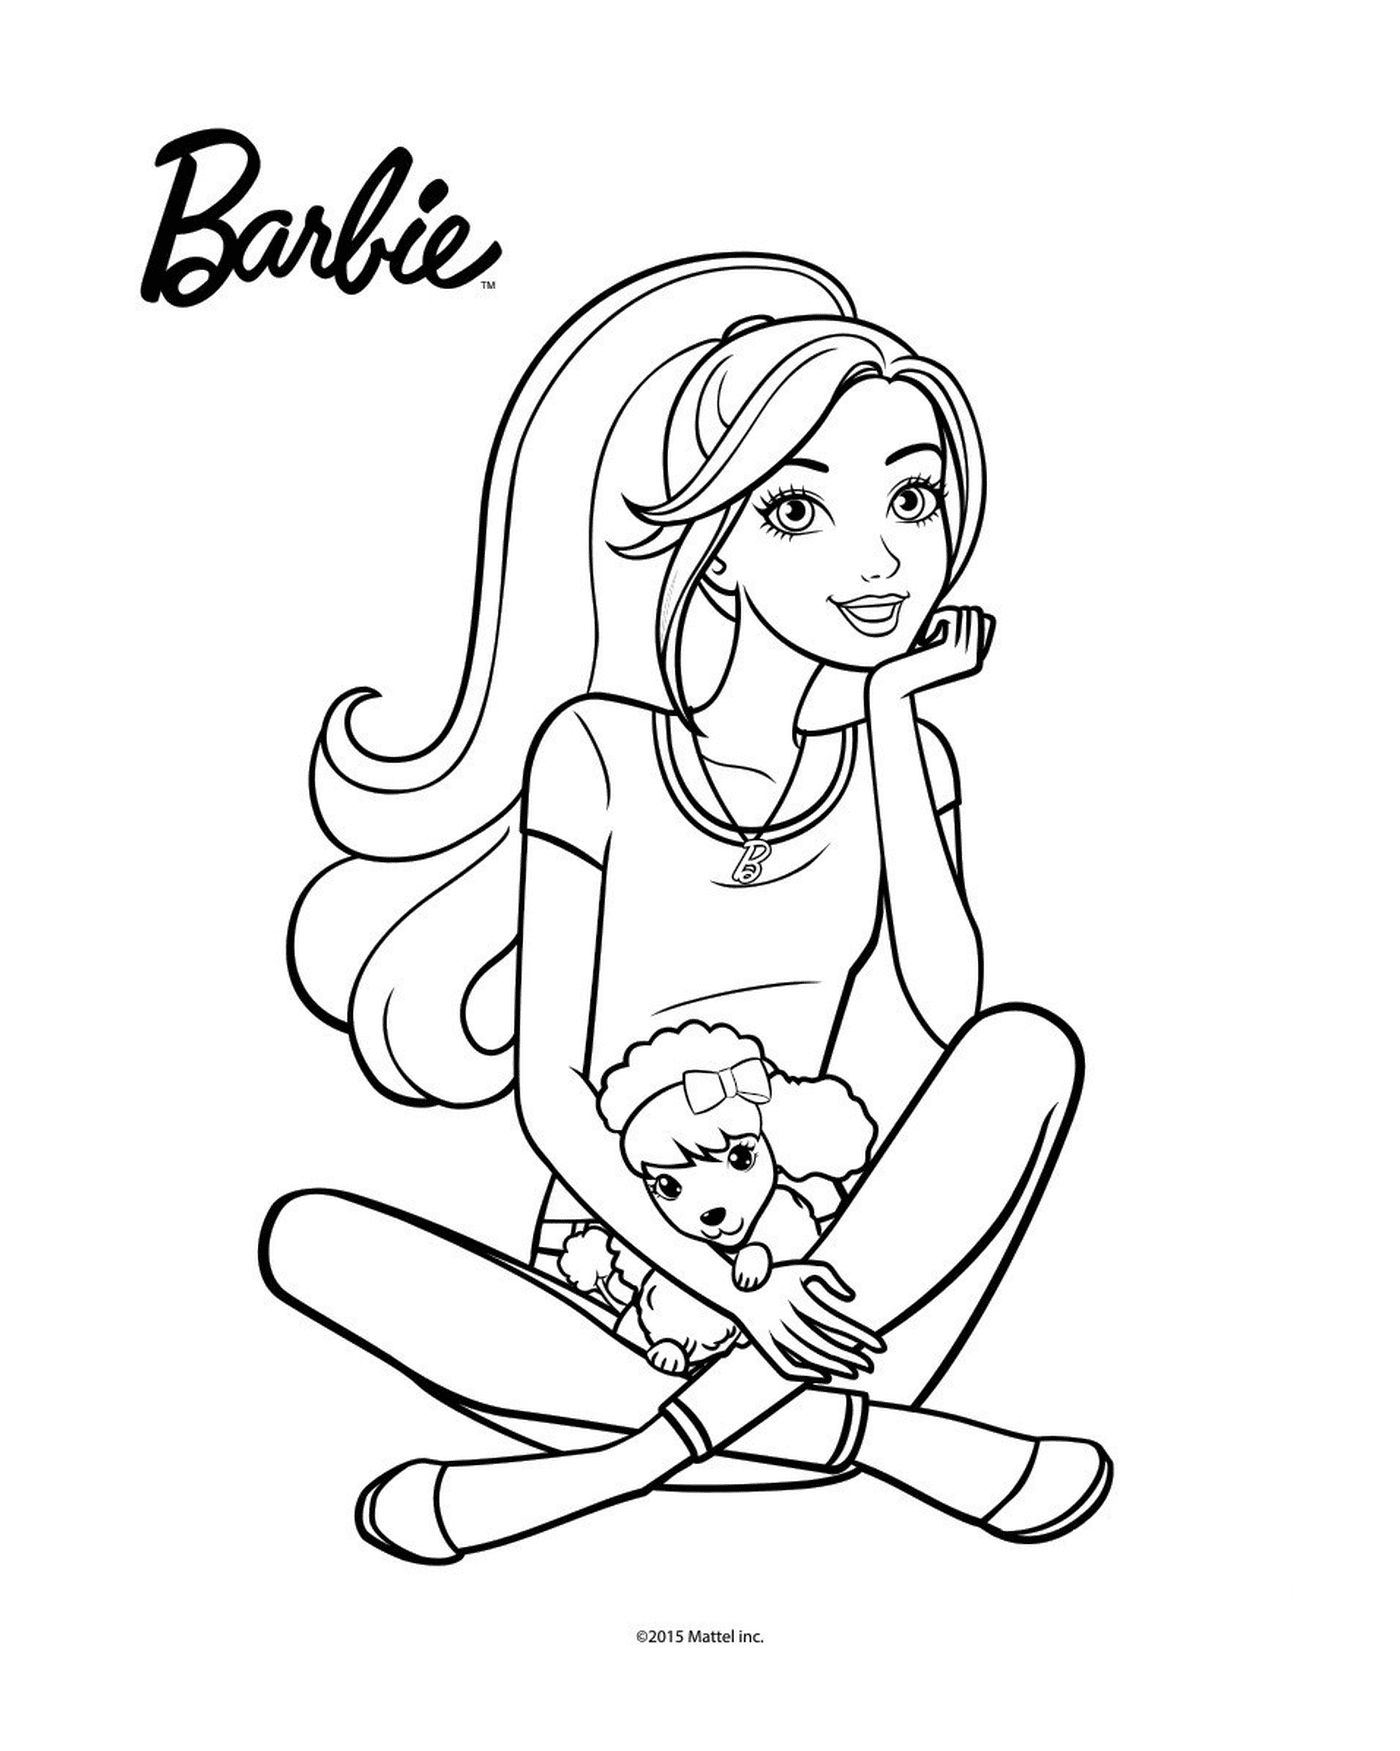  芭比 坐在地板上 拿着一个洋娃娃的芭比娃娃 